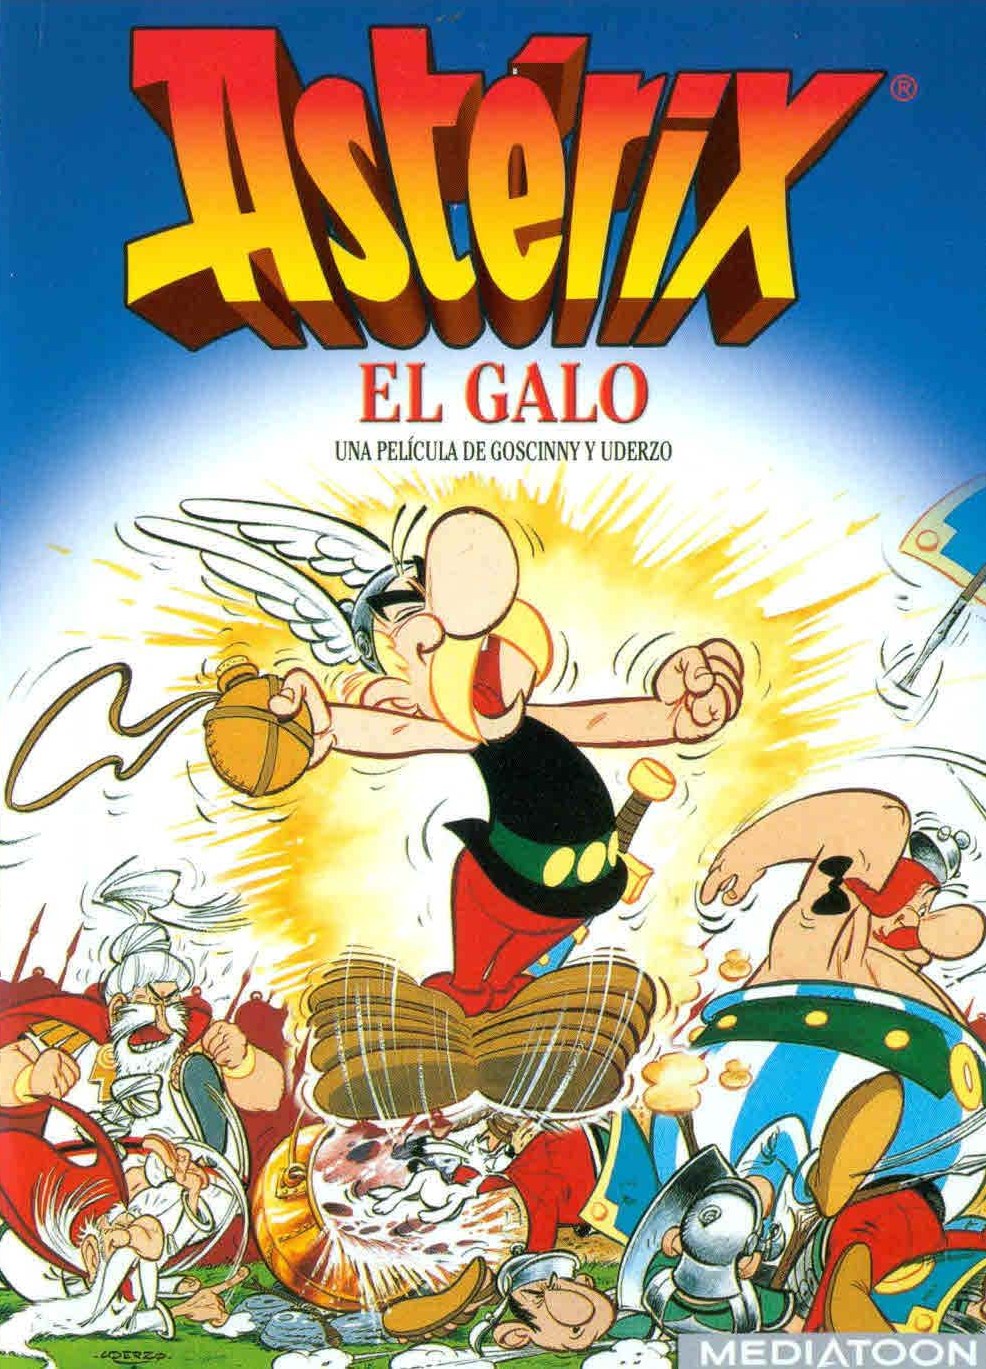 Astérix y Obélix - Peliculas Animadas (1967-2018) [720p]